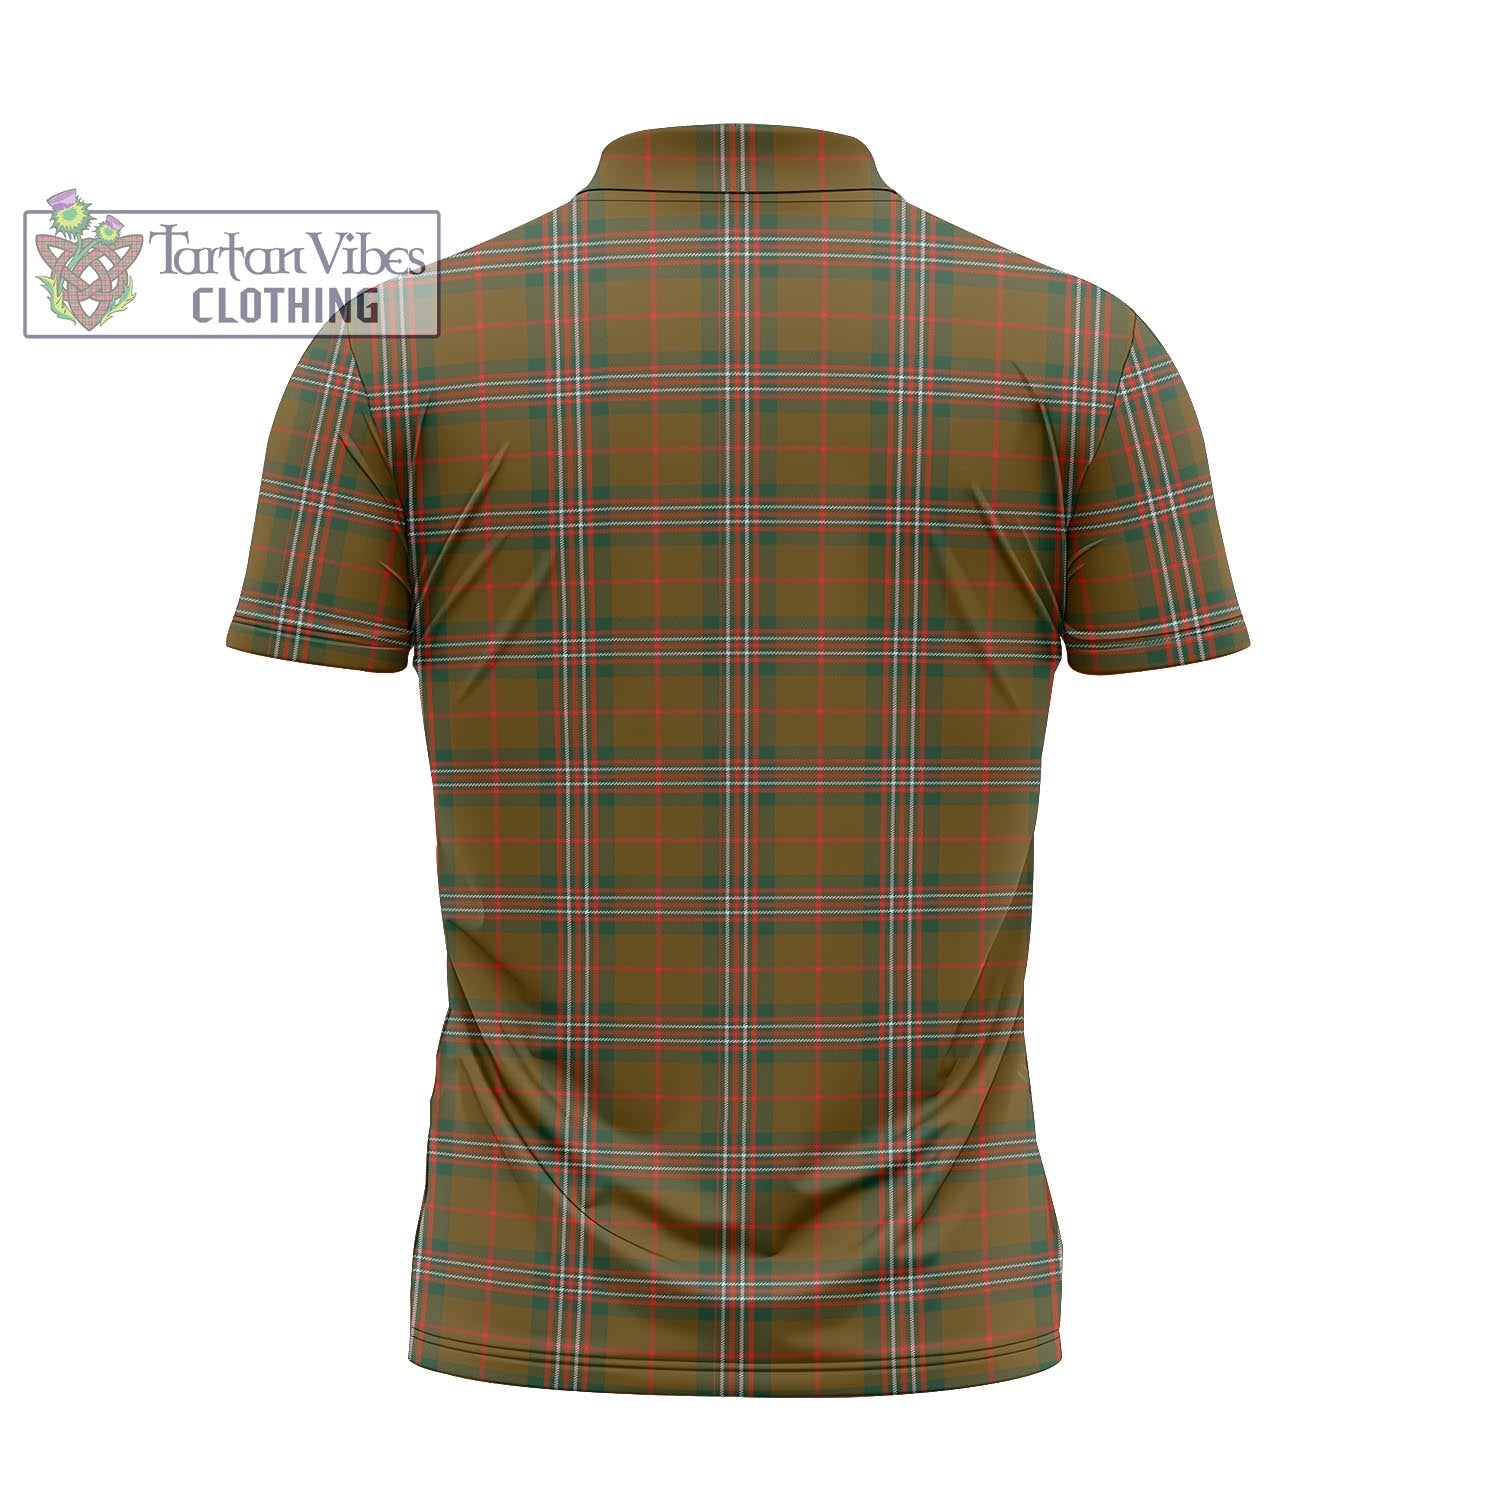 Tartan Vibes Clothing Scott Brown Modern Tartan Zipper Polo Shirt with Family Crest